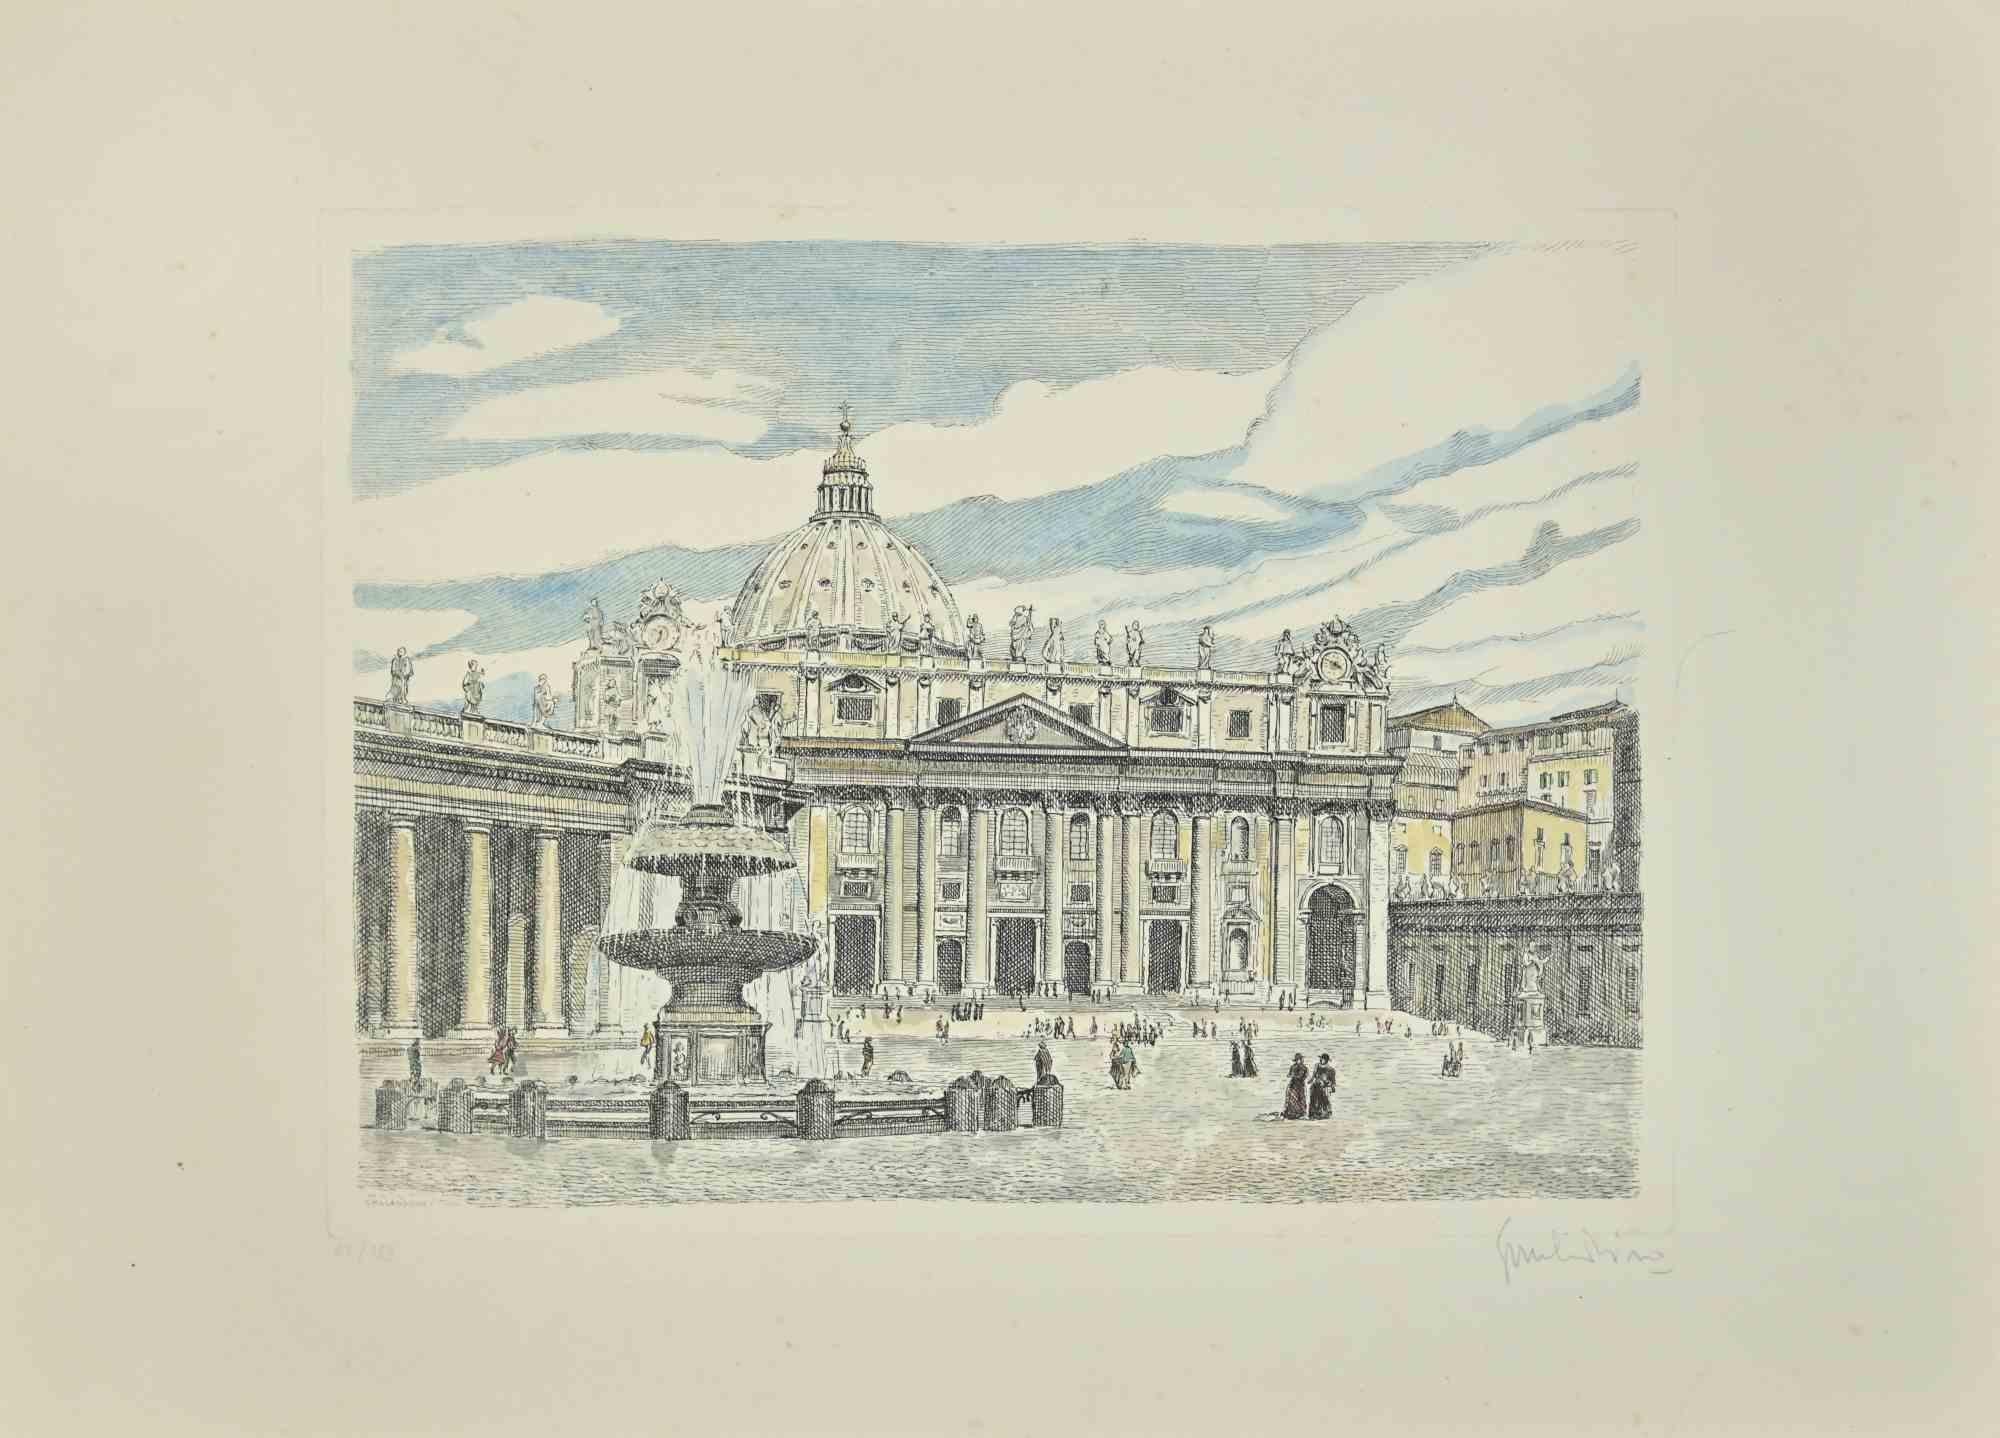 Der Petersplatz ist eine Radierung, die von dem italienischen Künstler  Giuseppe Malandrino.

vom Künstler handsigniert  unten rechts mit Bleistift.

In römischen Ziffern nummeriert, Auflage 62/199 Exemplare.

Perfekte Bedingungen. 

Das Kunstwerk